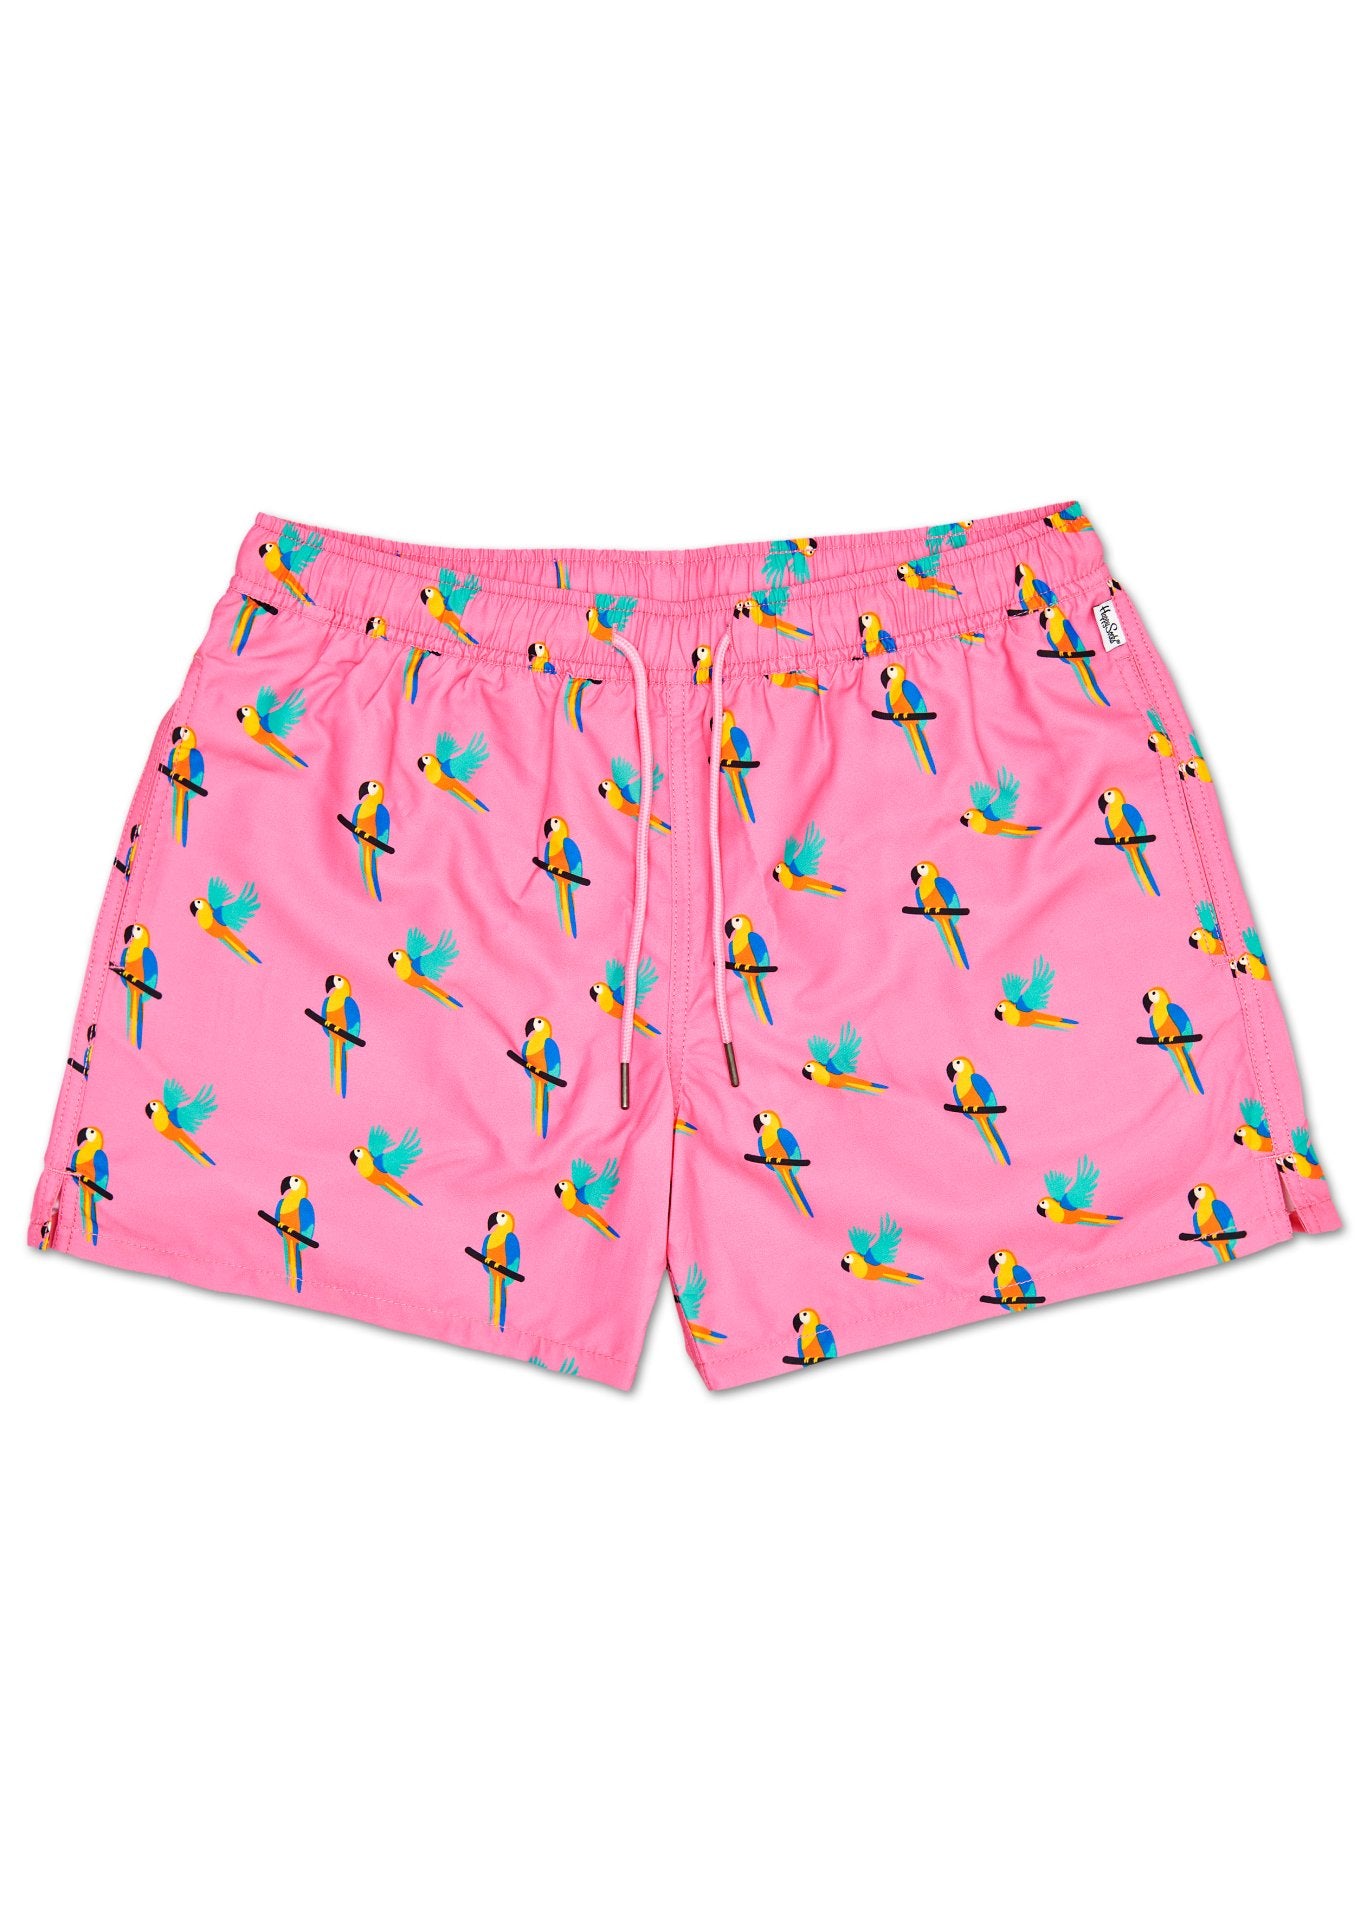 Ružové pánske plavky Happy Socks s papagájmi, vzor Parrot